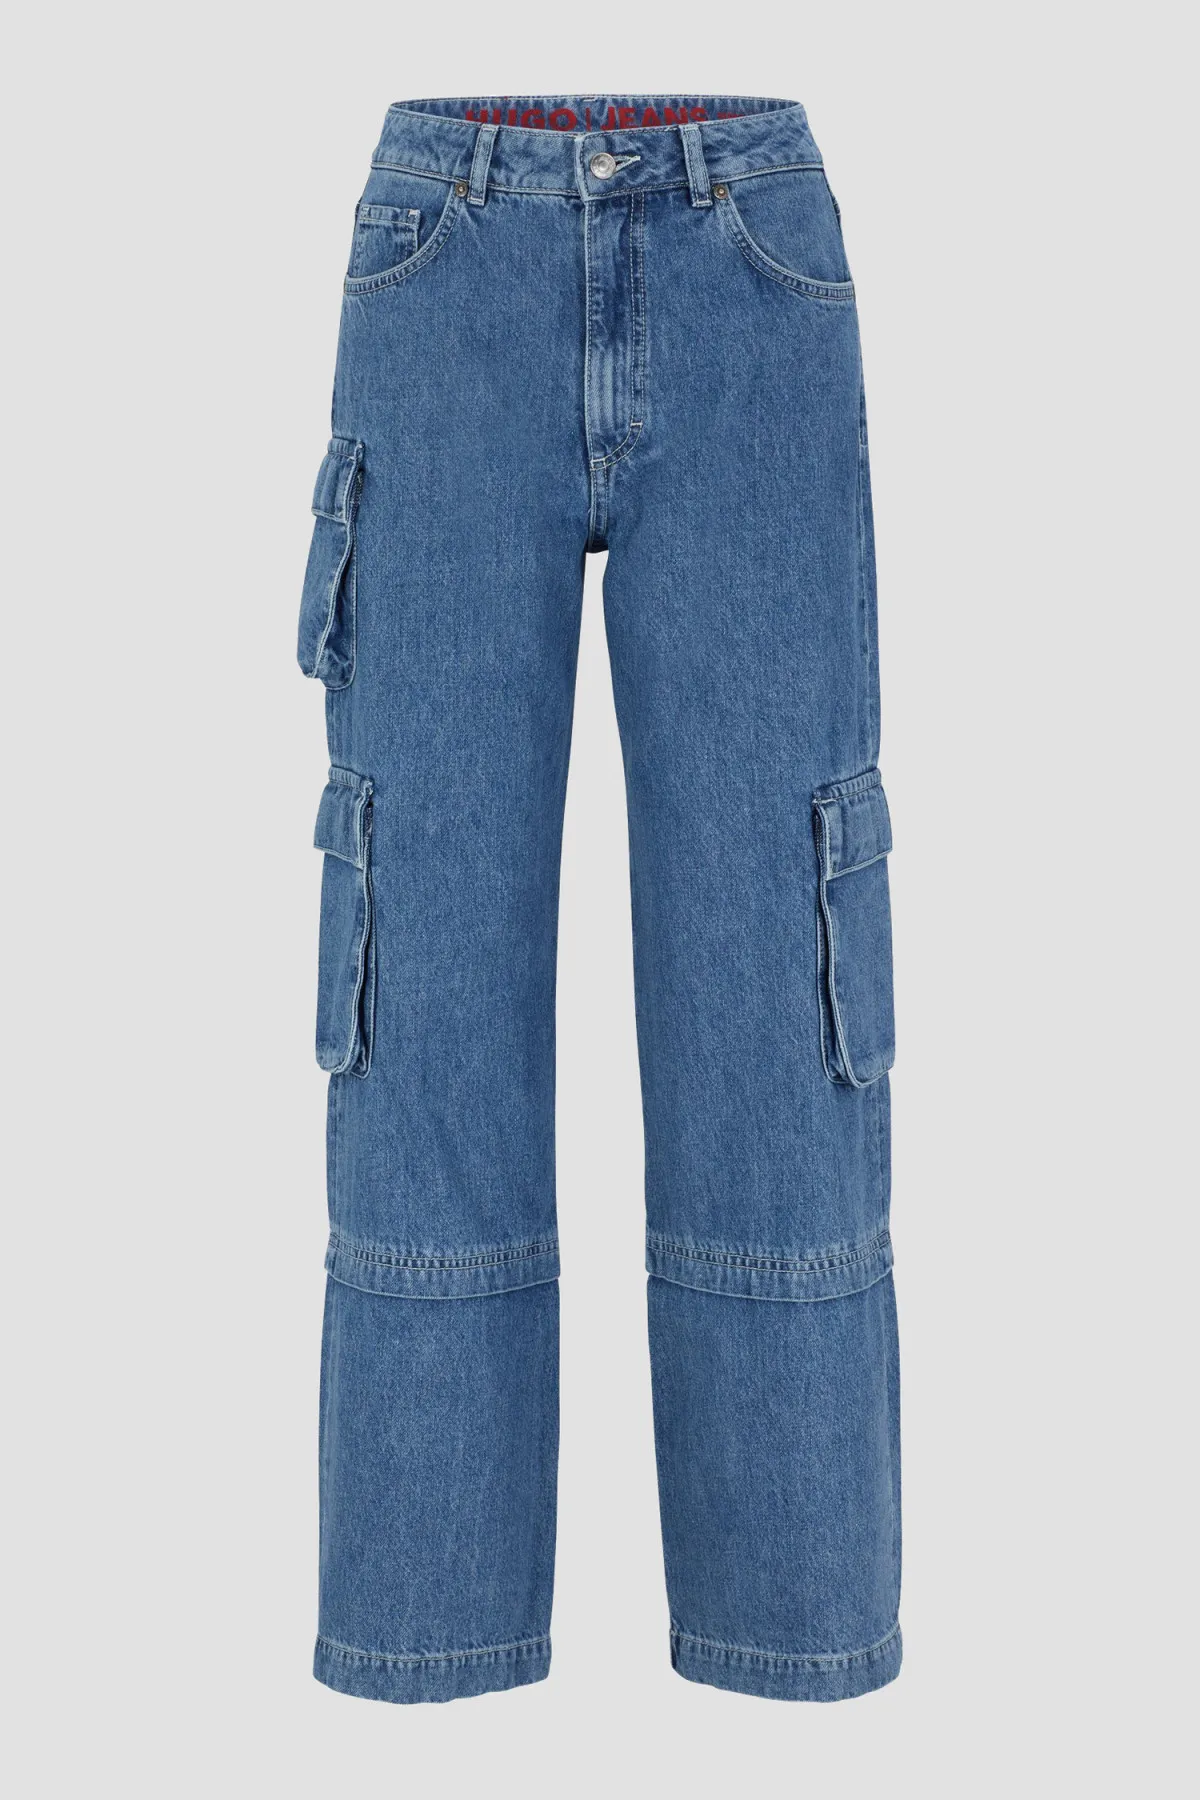 Модные джинсы на лето